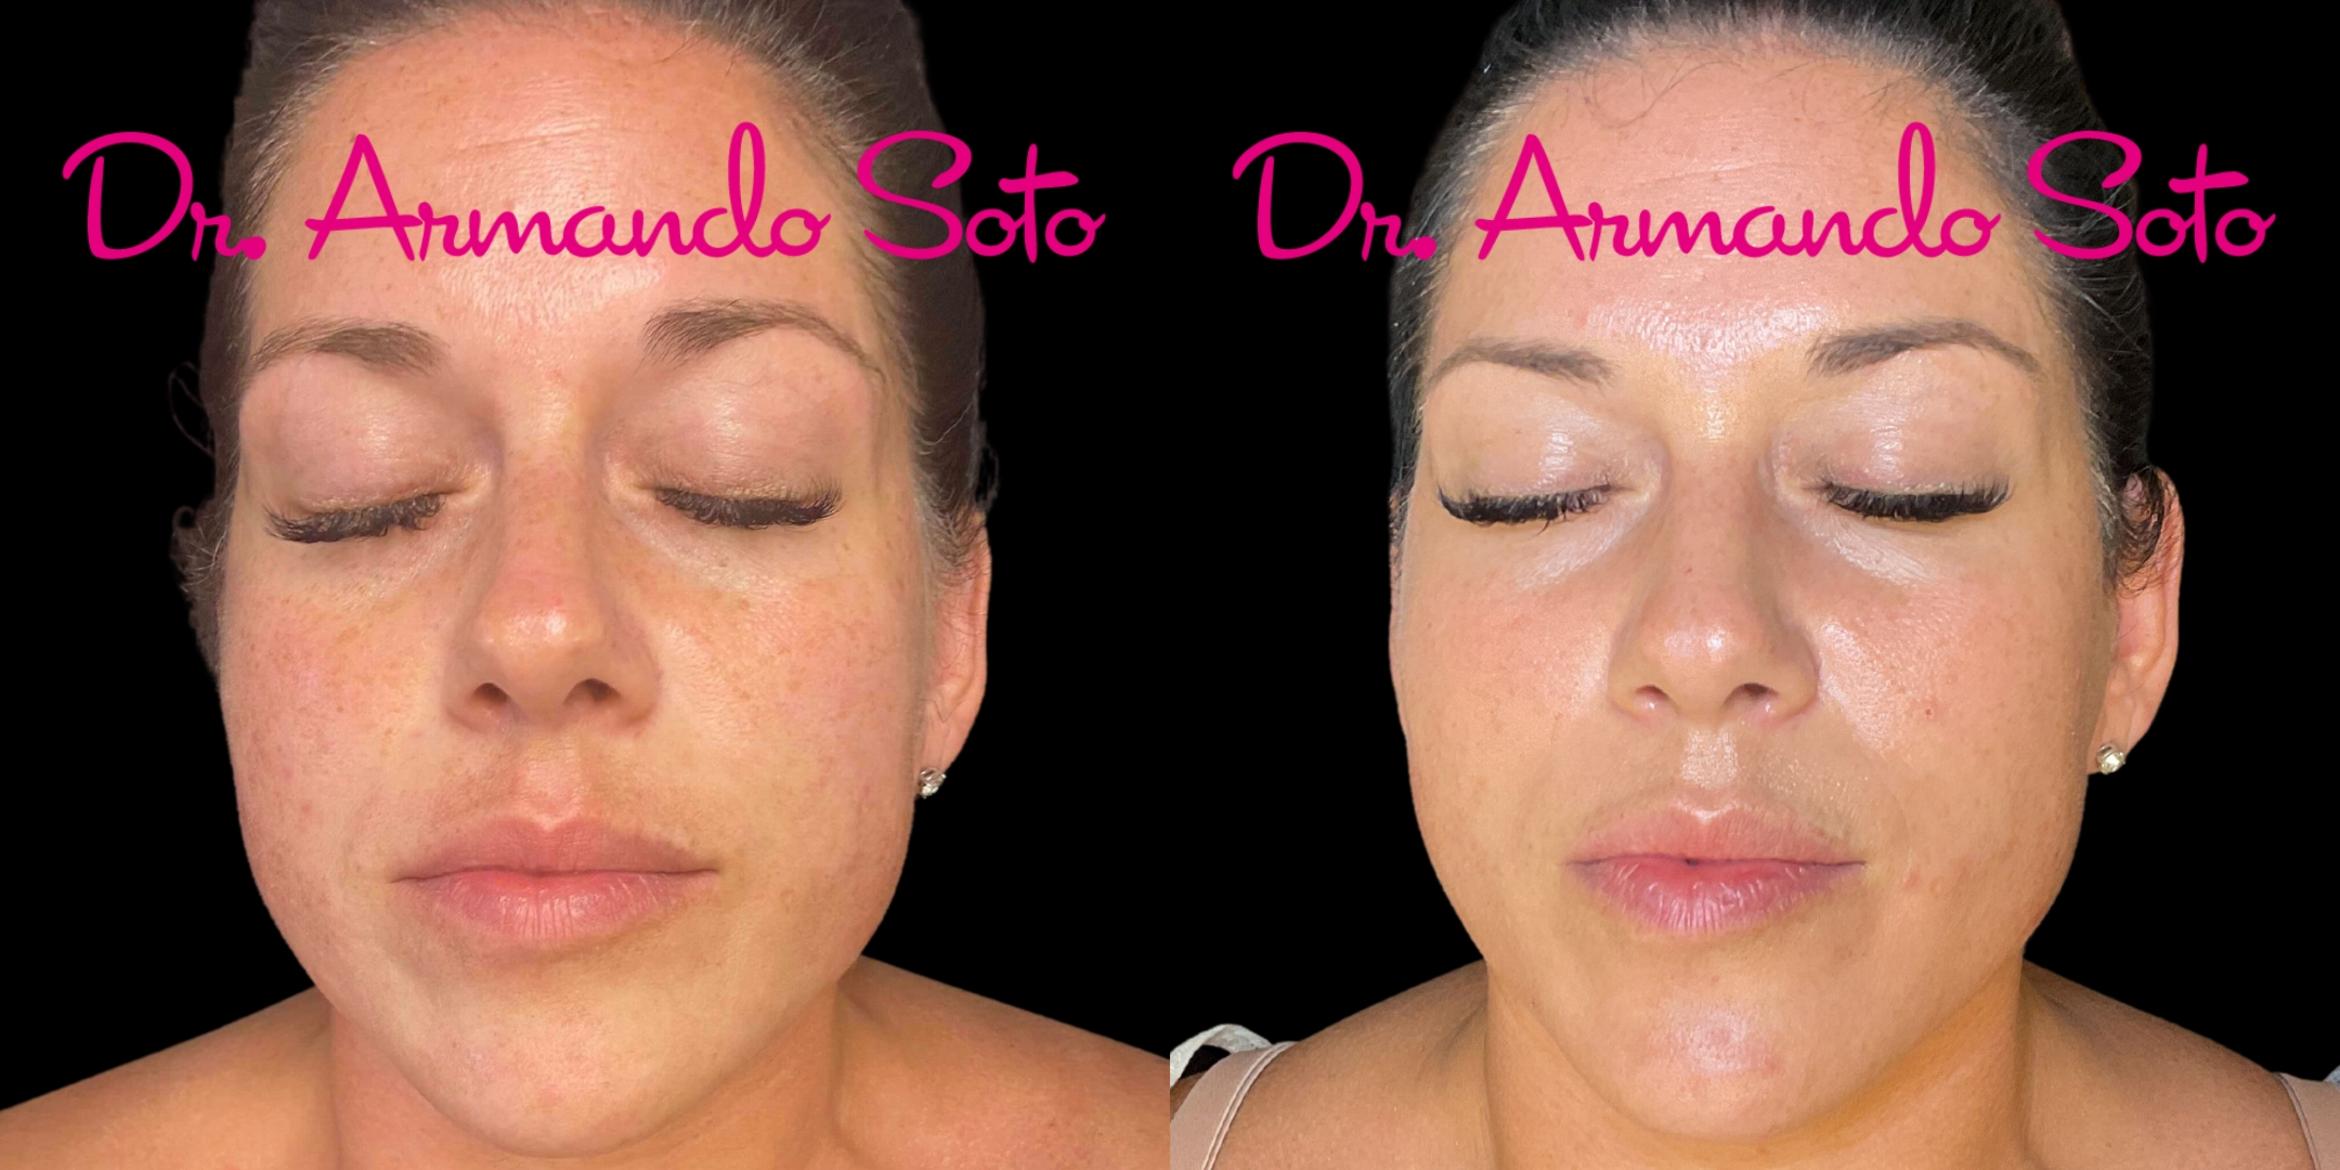 Before & After Laser Skin Rejuvenation Case 76290 Front View in Orlando, FL